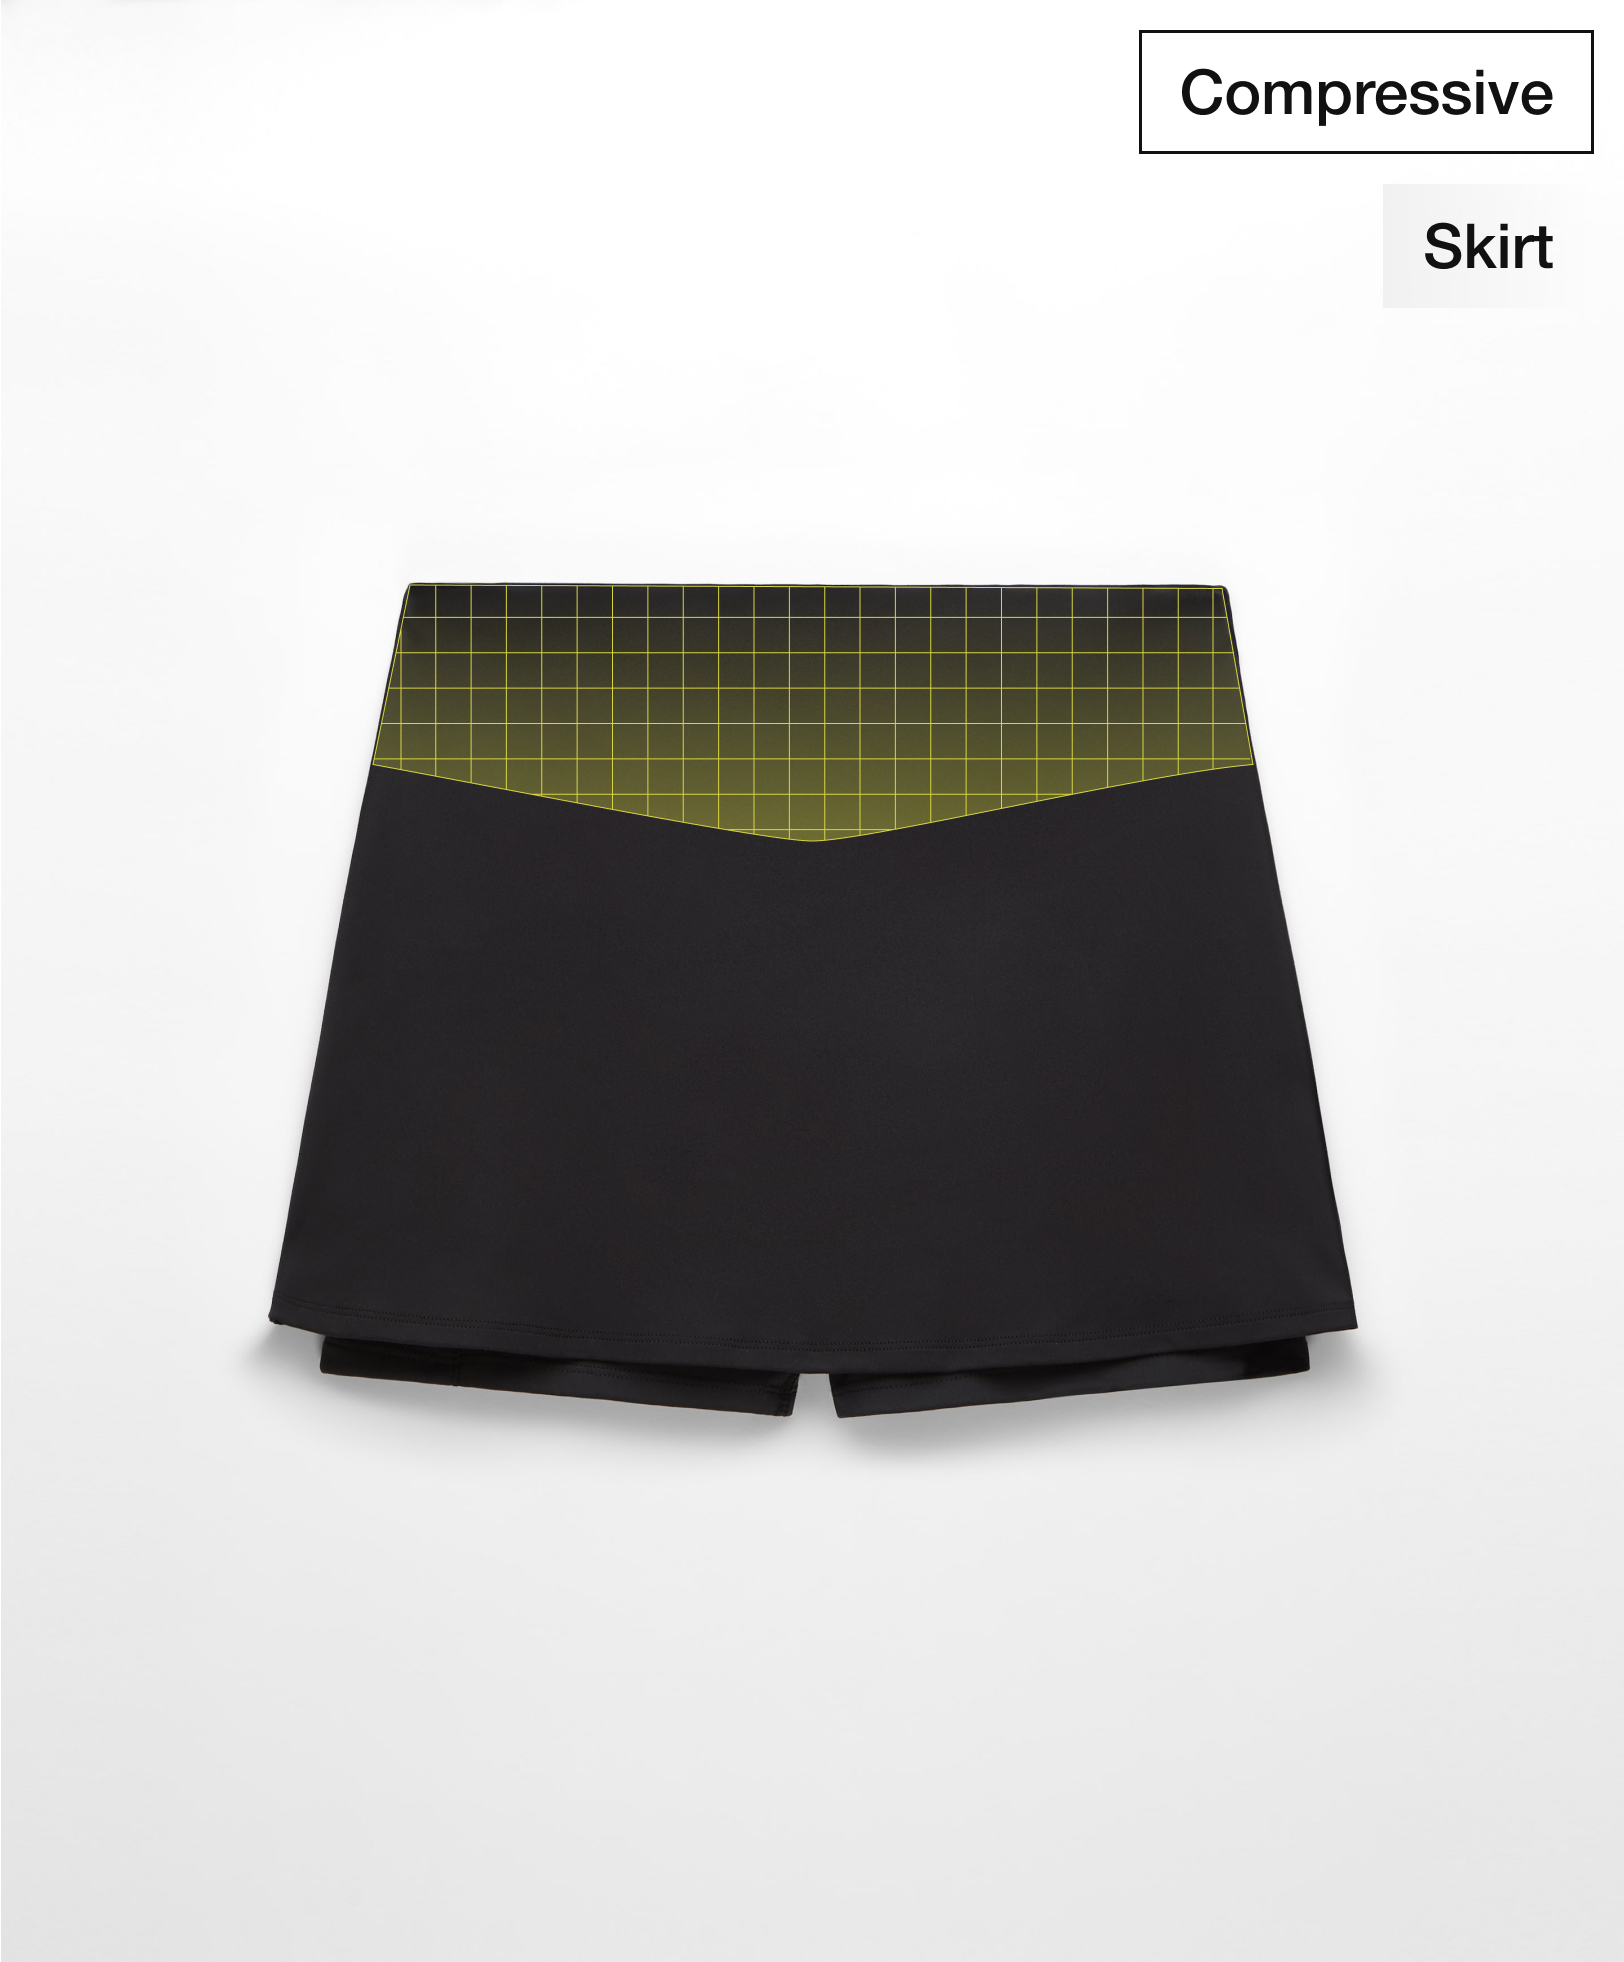 Pocket compressive skirt